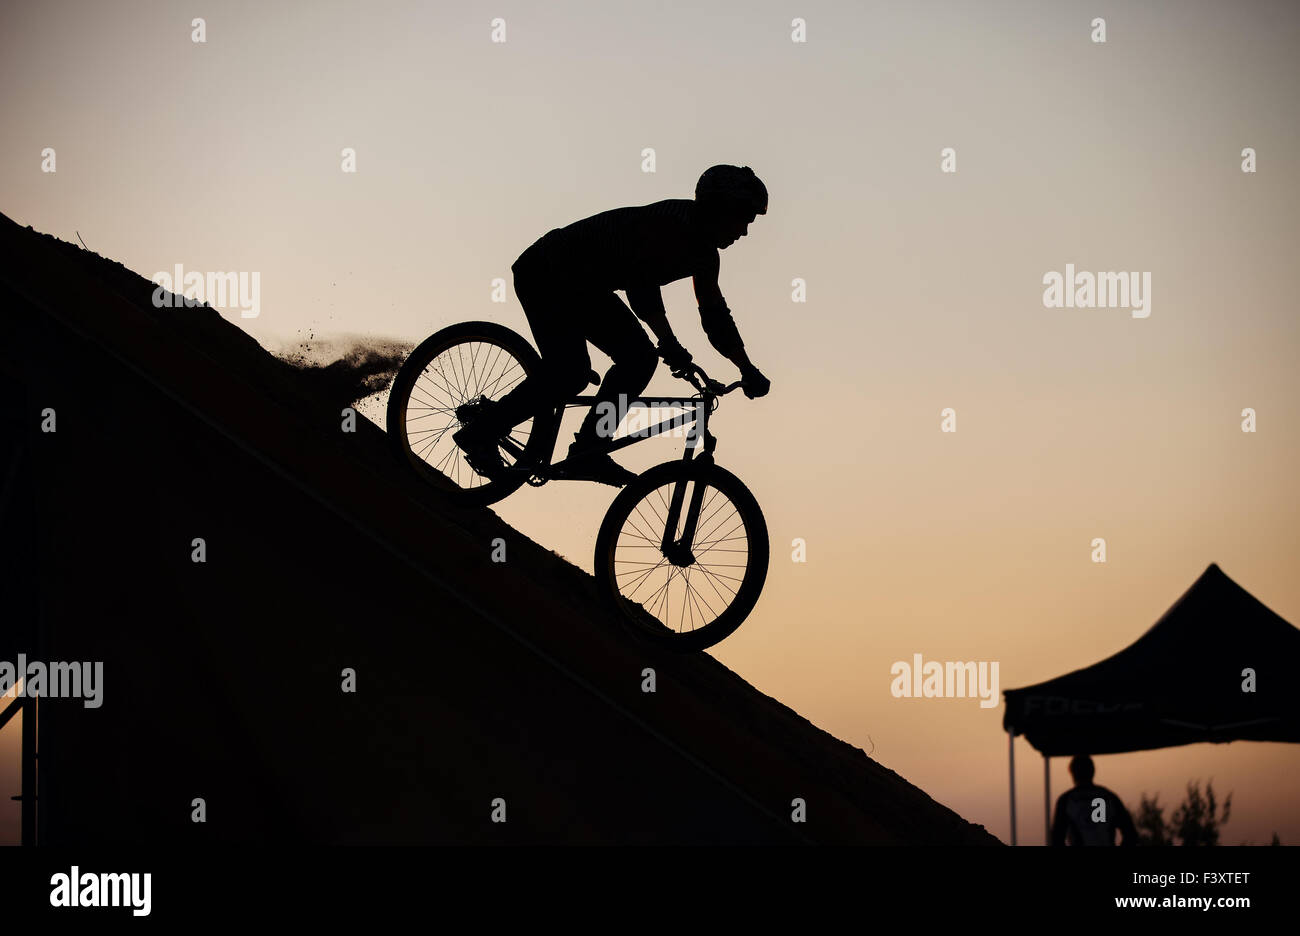 Jinete extremas antes de hacer un salto en bicicleta Foto de stock